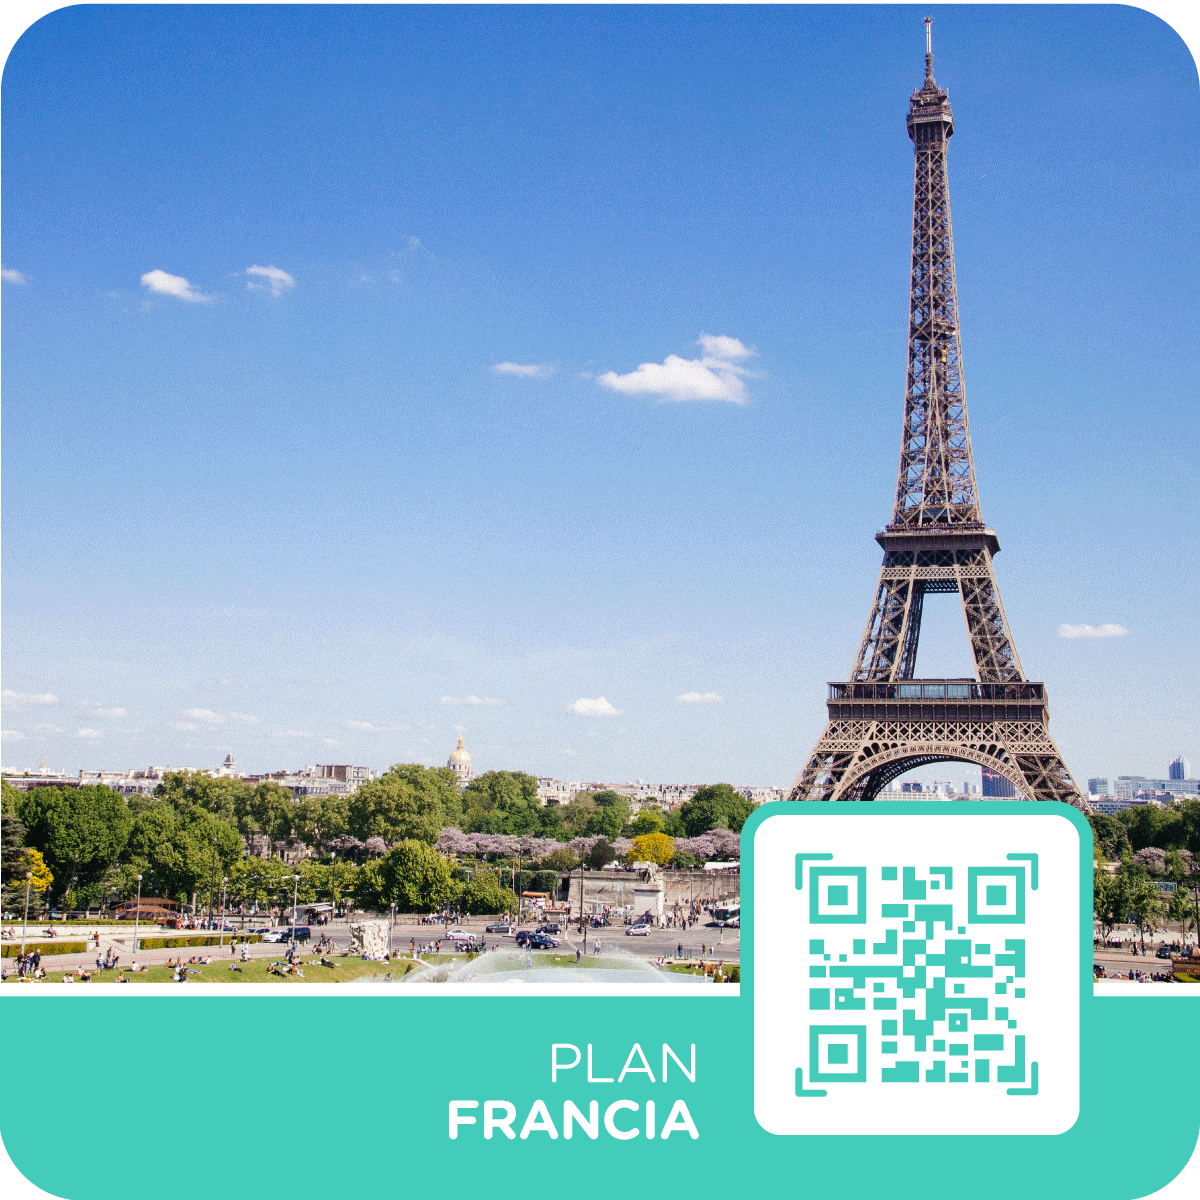 Fotografía de la Torre Eiffel en París, con un banner sobrepuesto que muestra un código QR y una frase que dice “Plan Francia”, haciendo referencia a las tarjetas eSIM con internet prepago para viajar a Francia a los mejores precios.